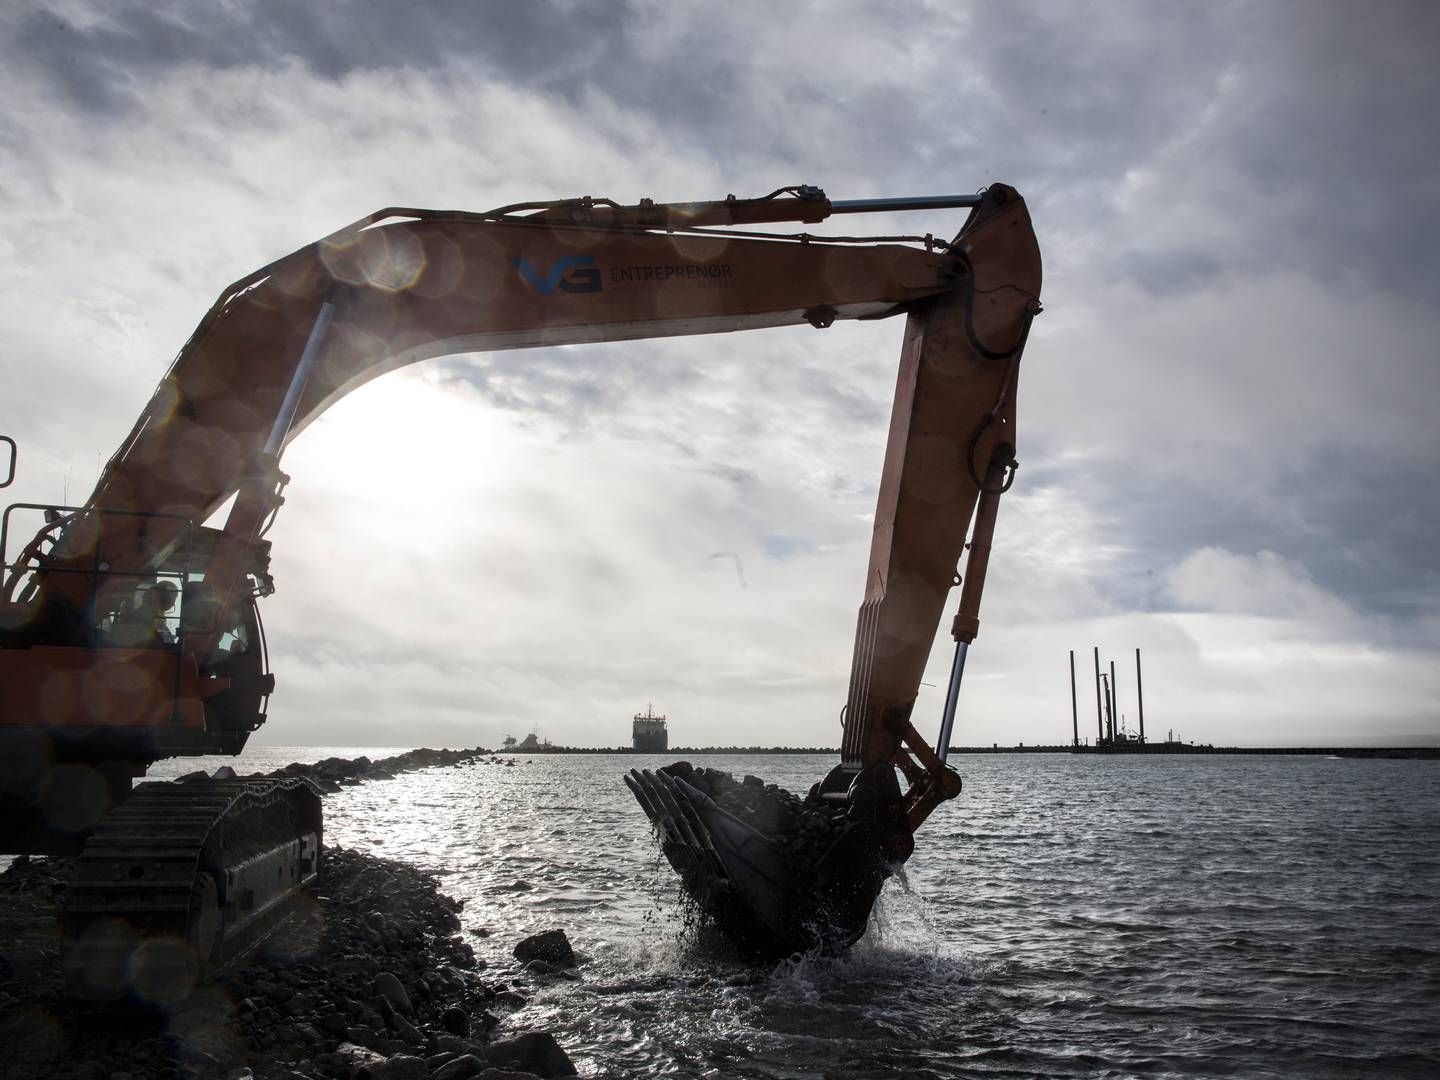 De økonomiske problemer i Frederikshavn Havn hænger sammen med en omfattende udvidelse af havnen, der blev besluttet i 2010 | Foto: Nørskov Benjamin/Jyllands-Posten/Ritzau Scanpix